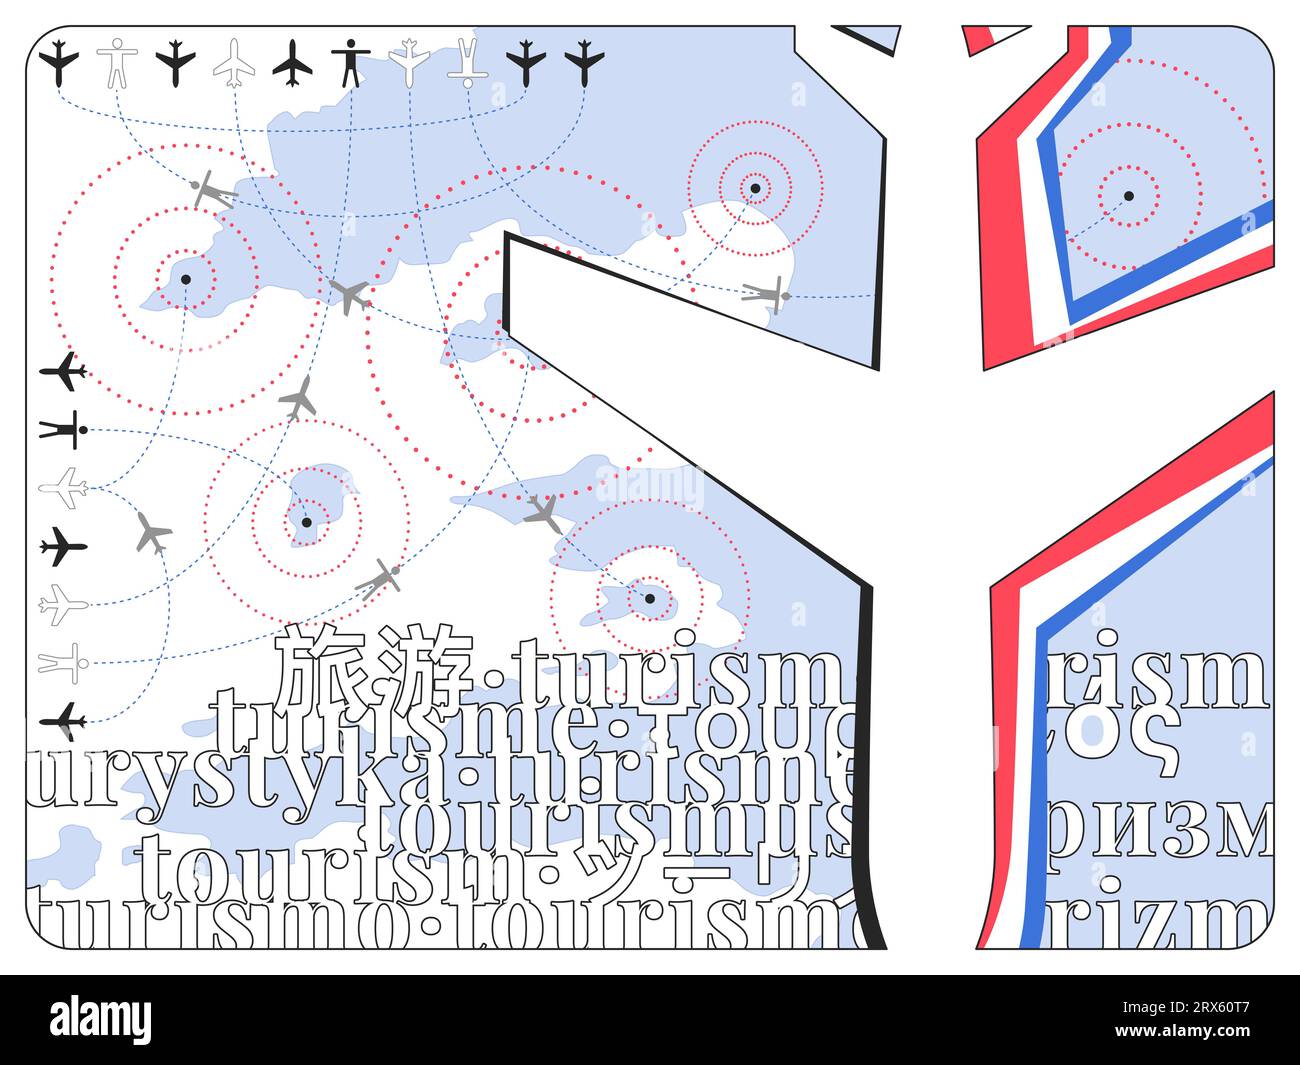 Une représentation plate minimaliste de l'impact du tourisme et du transport aérien sur les destinations Illustration de Vecteur